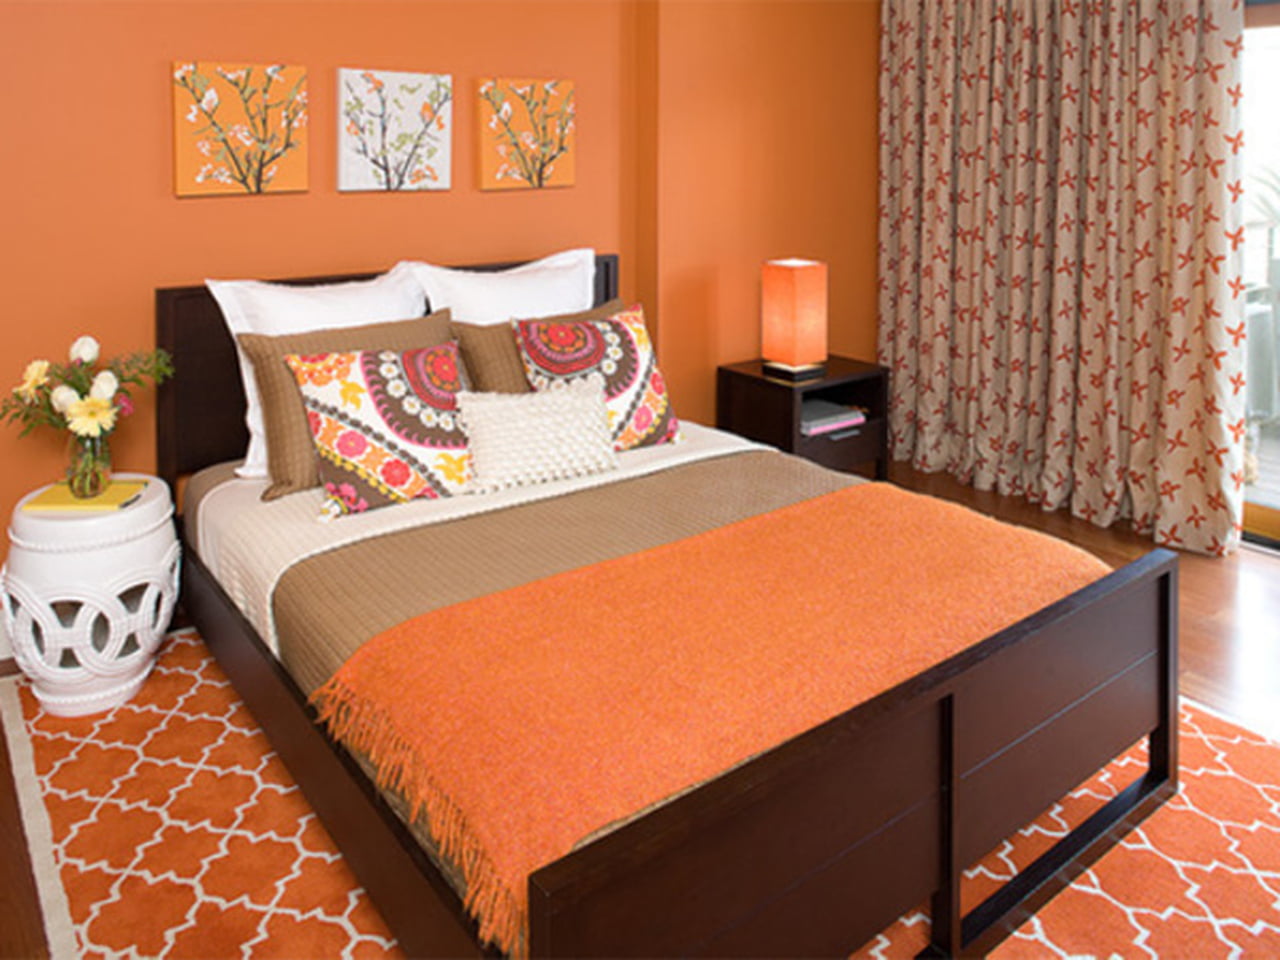 غرف نوم باللون البرتقالي والبني ديكور رائع لغرفة نومك من البرتقالي والبني حلوه خيال